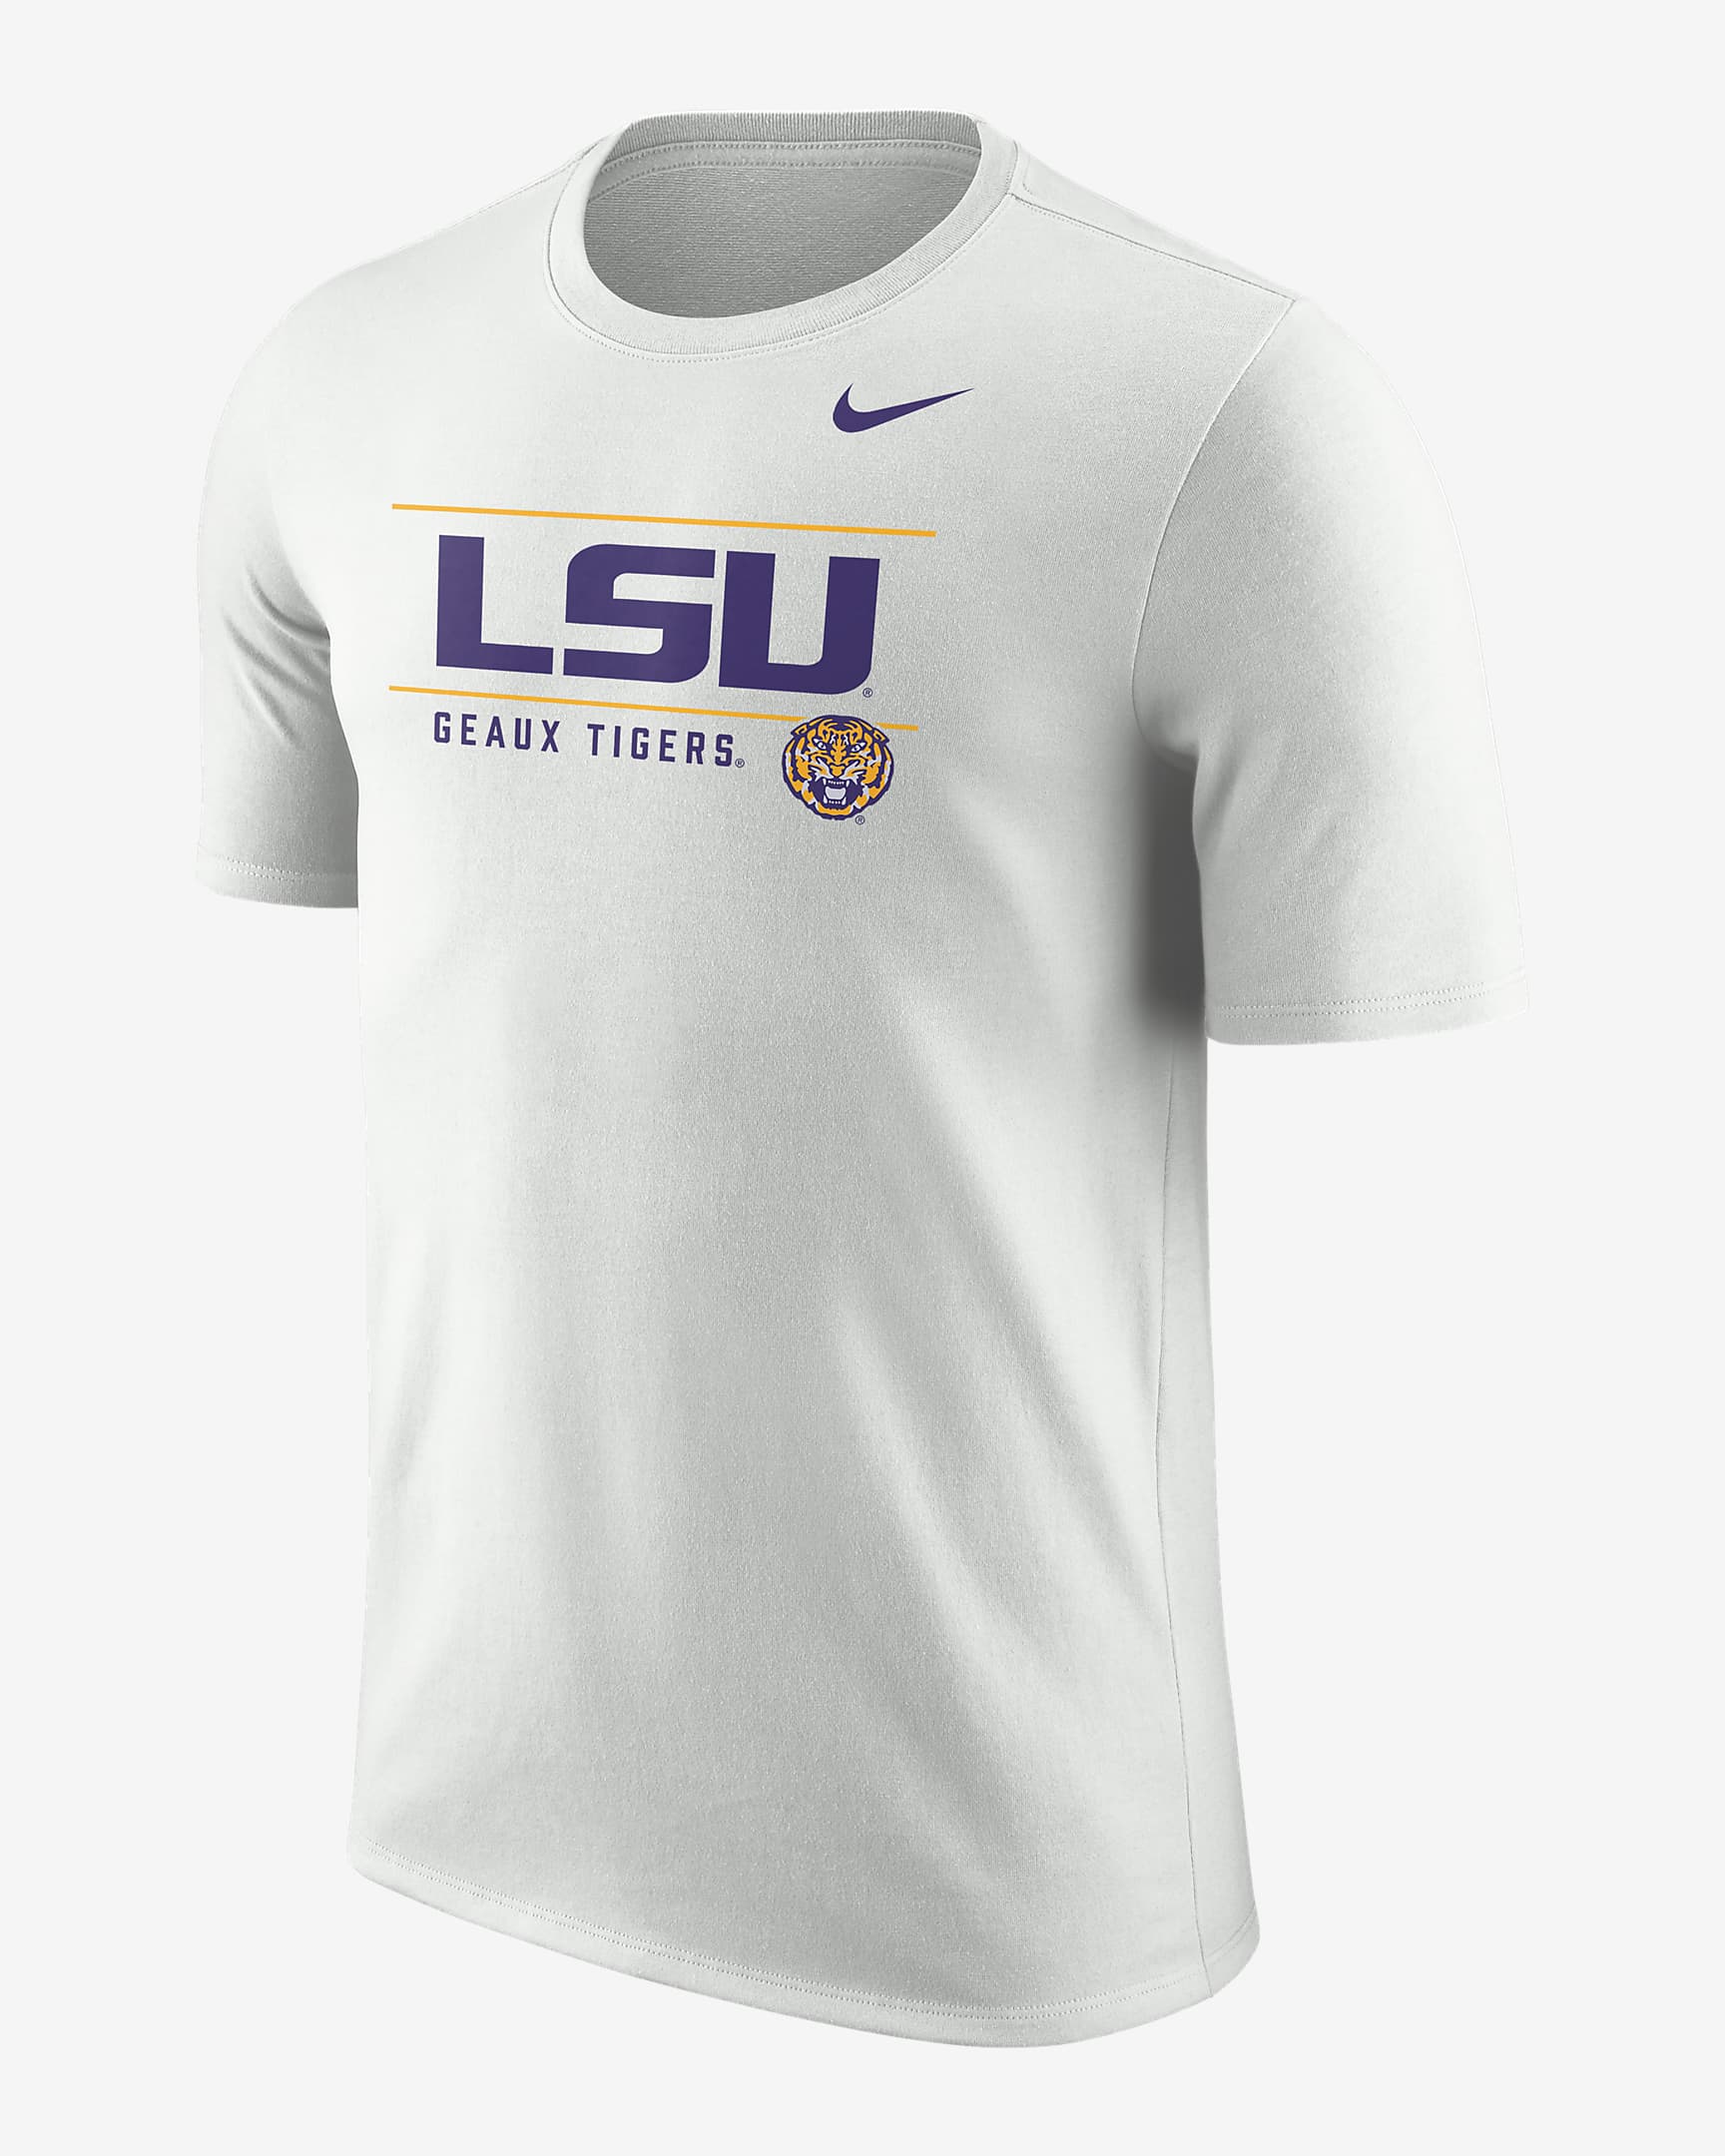 LSU Men's Nike College T-Shirt. Nike.com